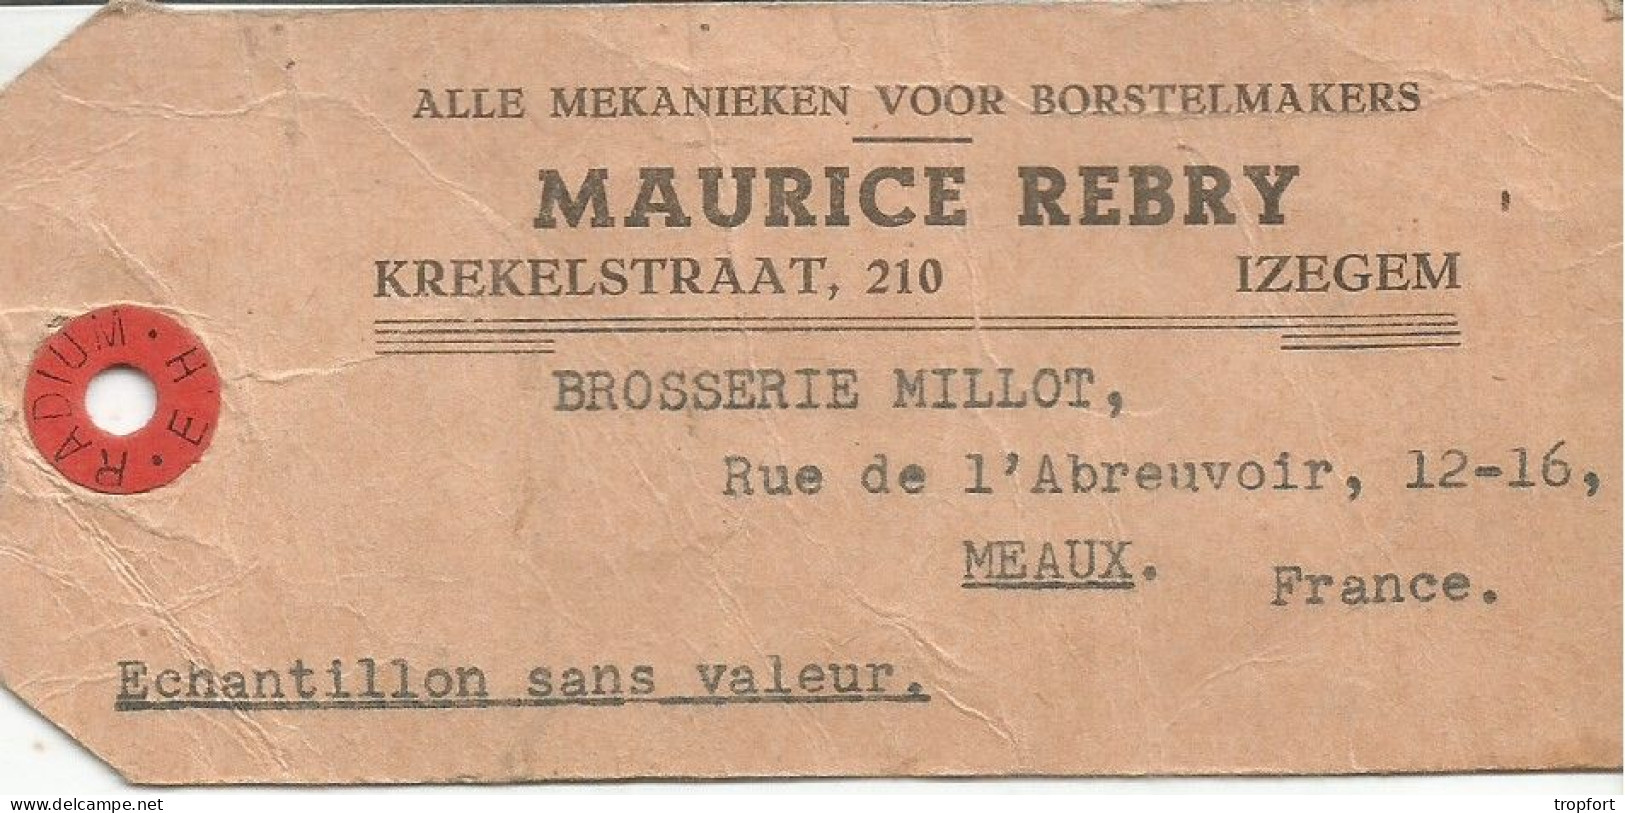 Ticket ETIQUETTE  POSTAL TIMBRE Maurice REBRY IZEGEM   BELGIQUE  MEAUX - Publicidad